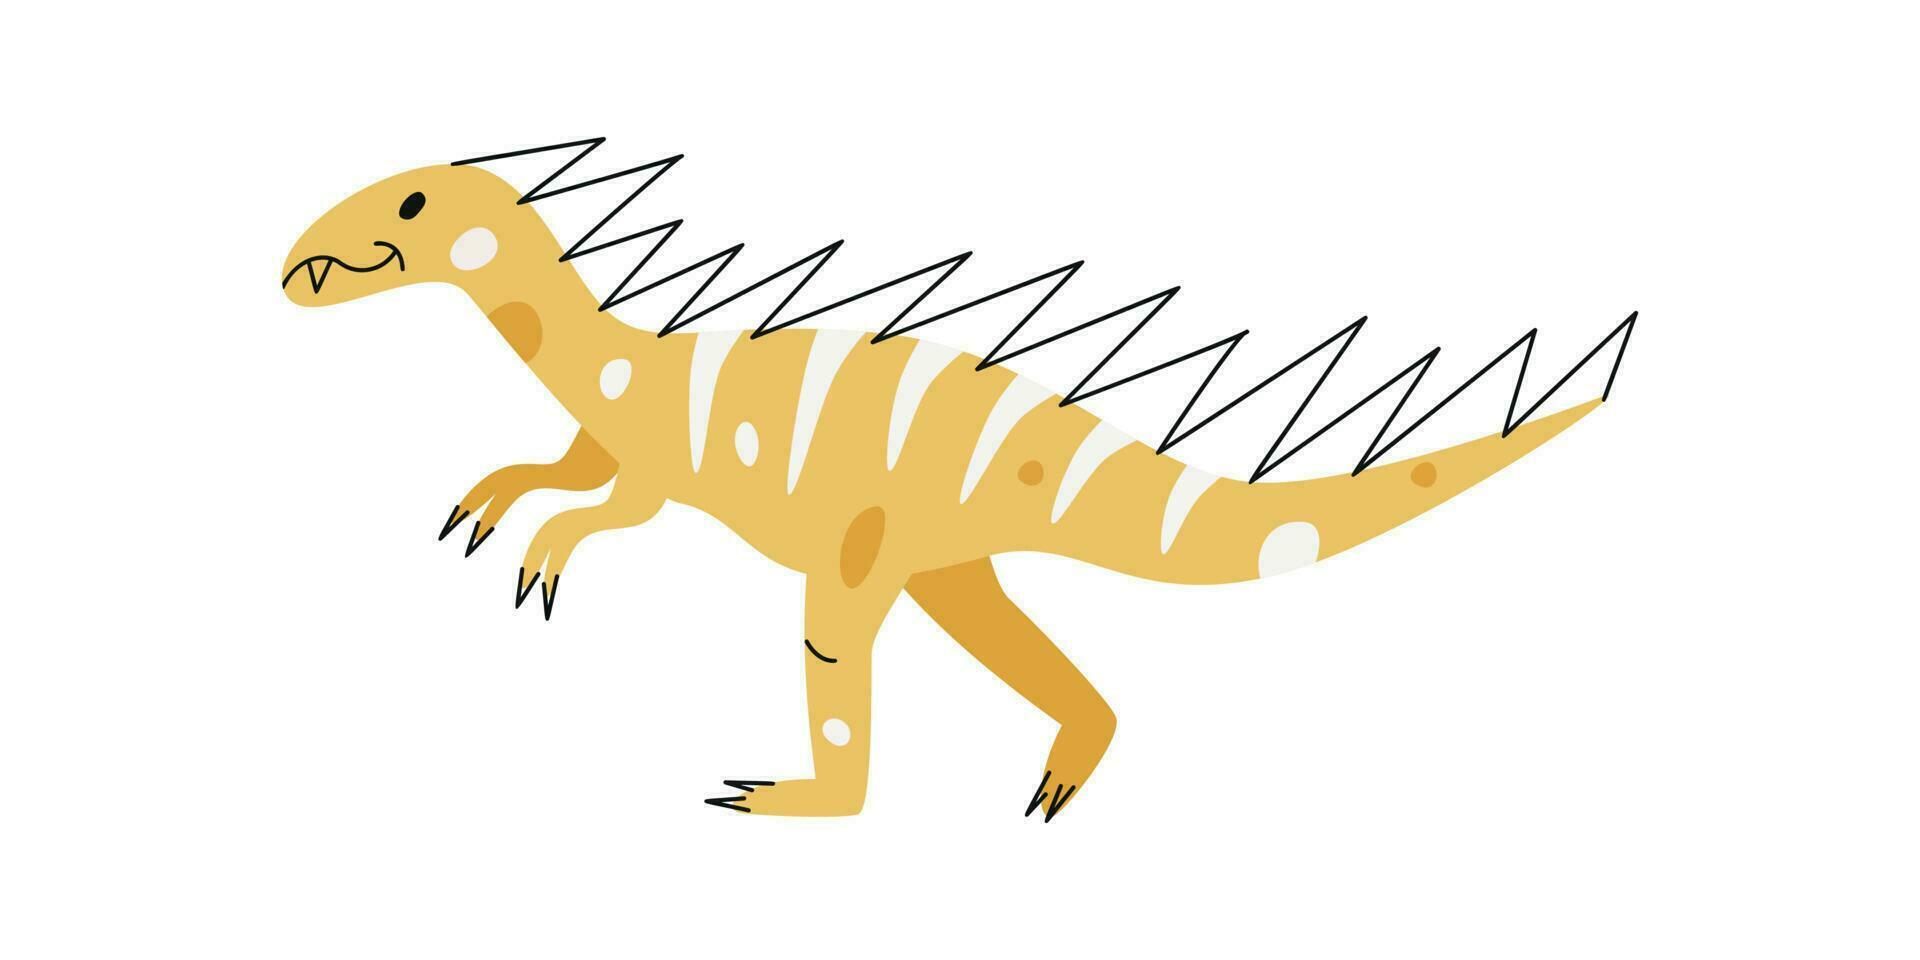 vlak hand- getrokken vector illustratie van hypsilophodon dinosaurus